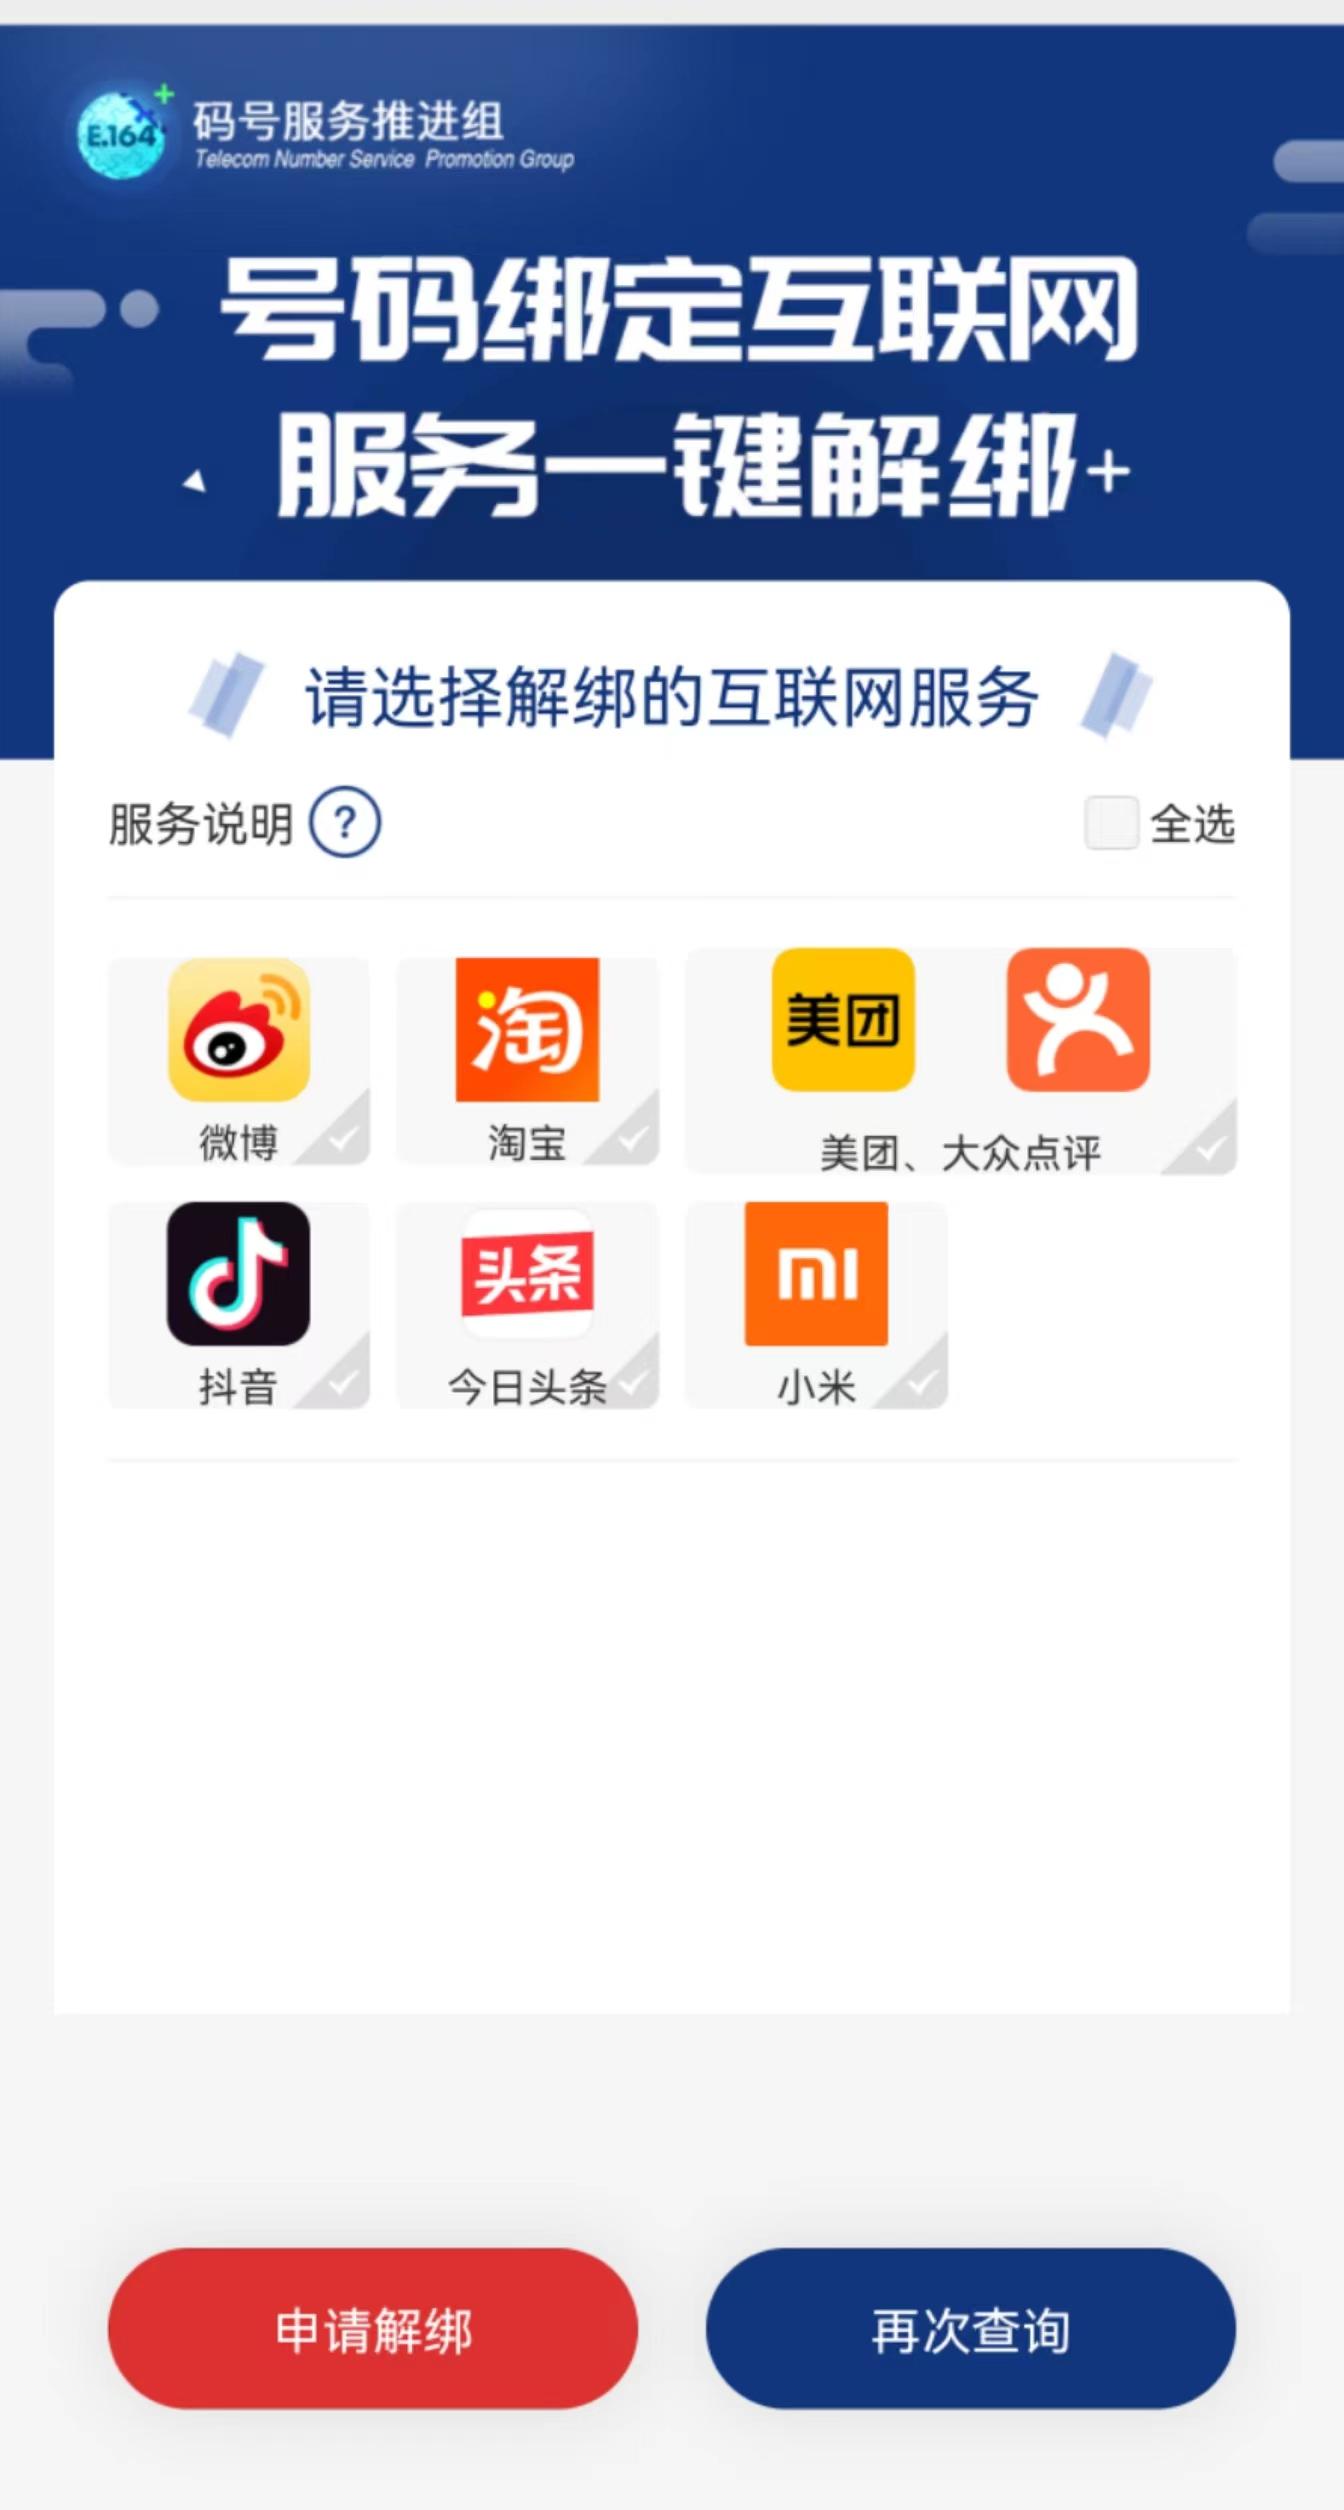 中国信通院推出手机号“一键解绑” 功能 覆盖多款常用APP